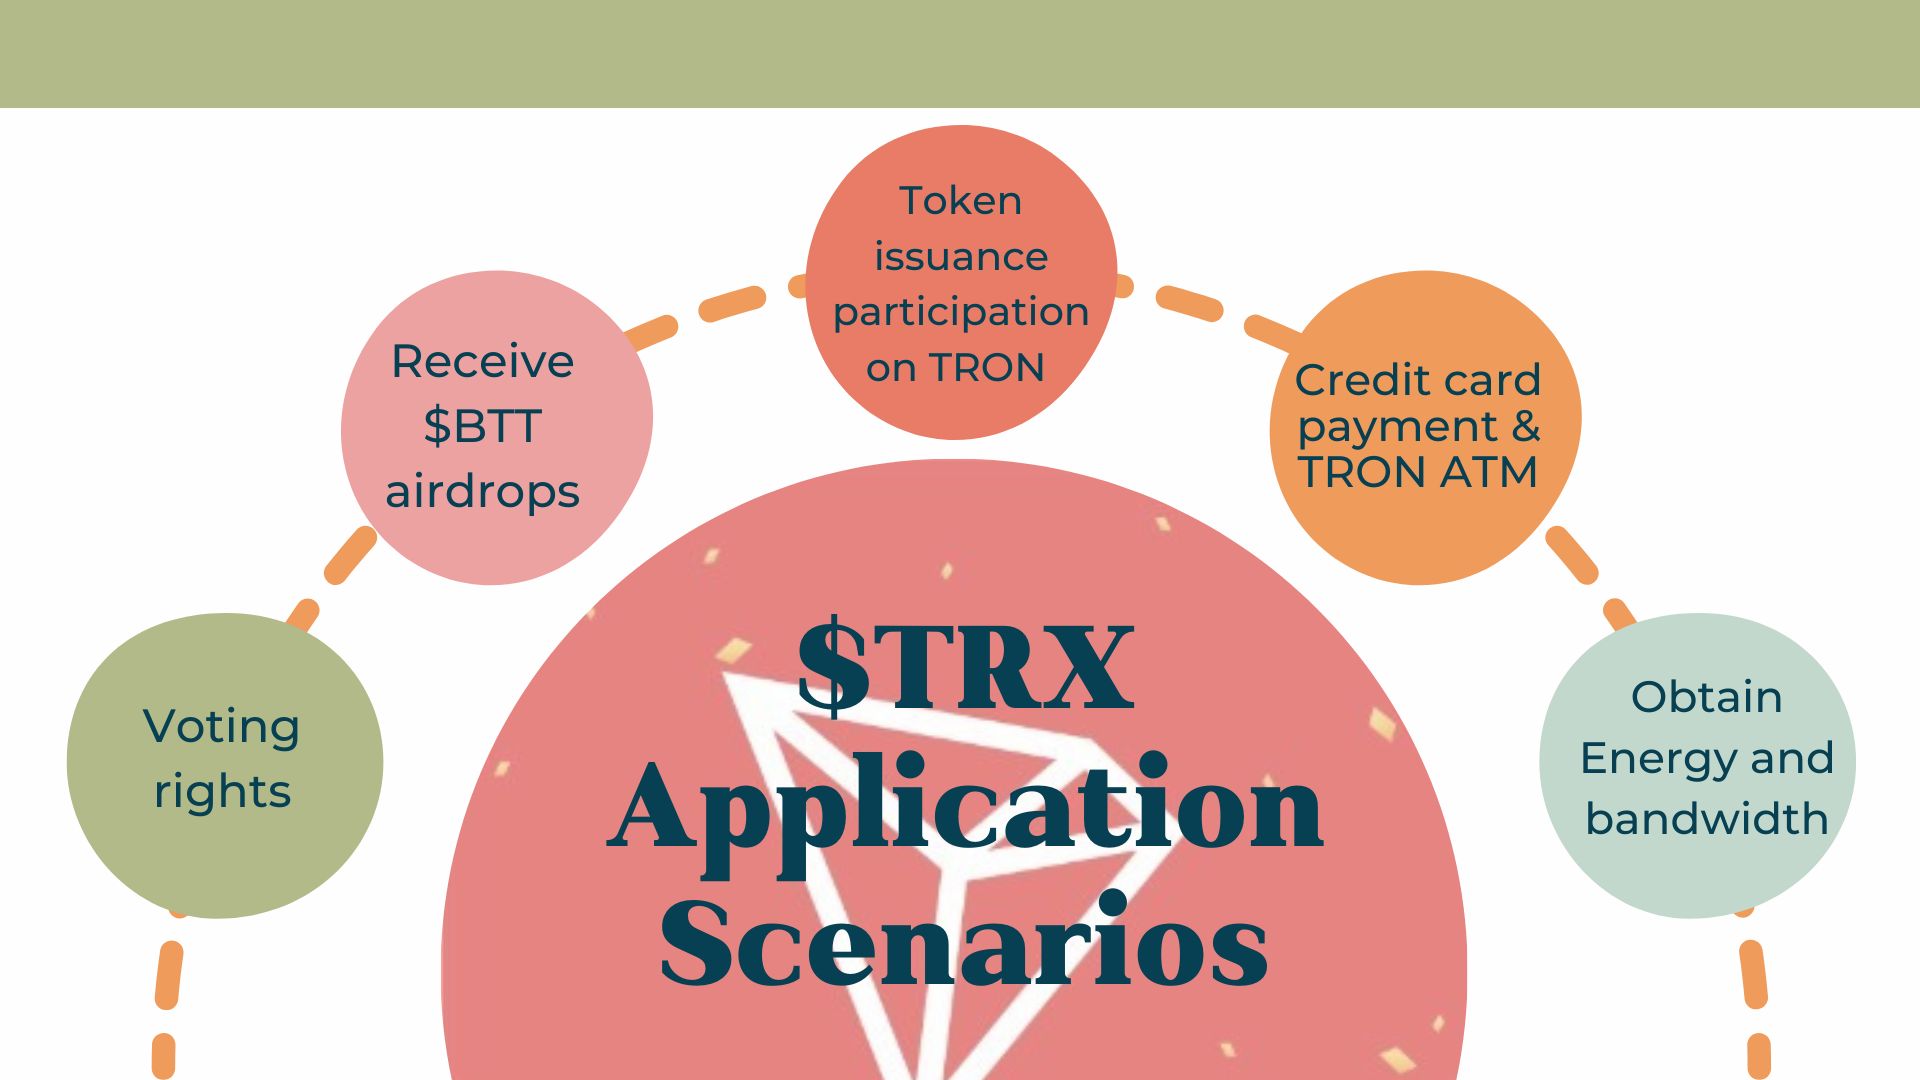 TRX application scenarios